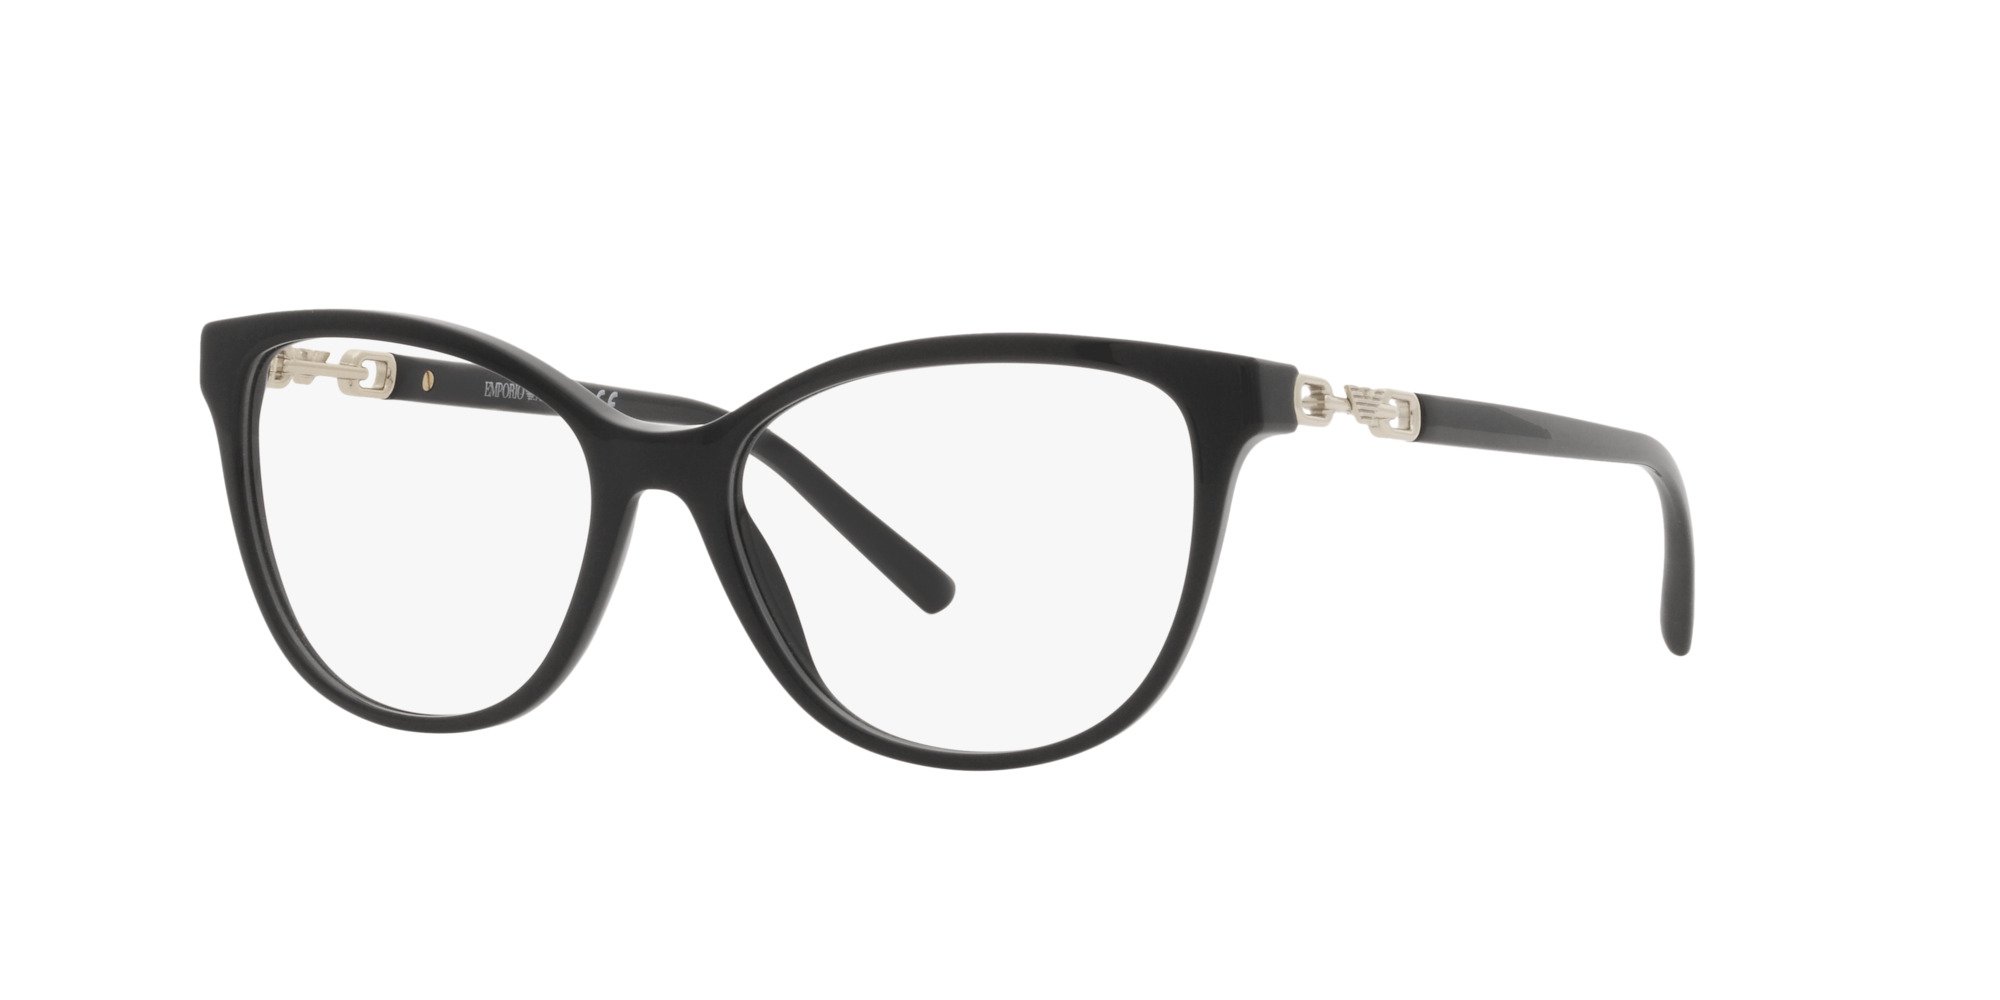 Das Bild zeigt die Korrektionsbrille EA3190 5001 von der Marke Emporio Armani in Schwarz.